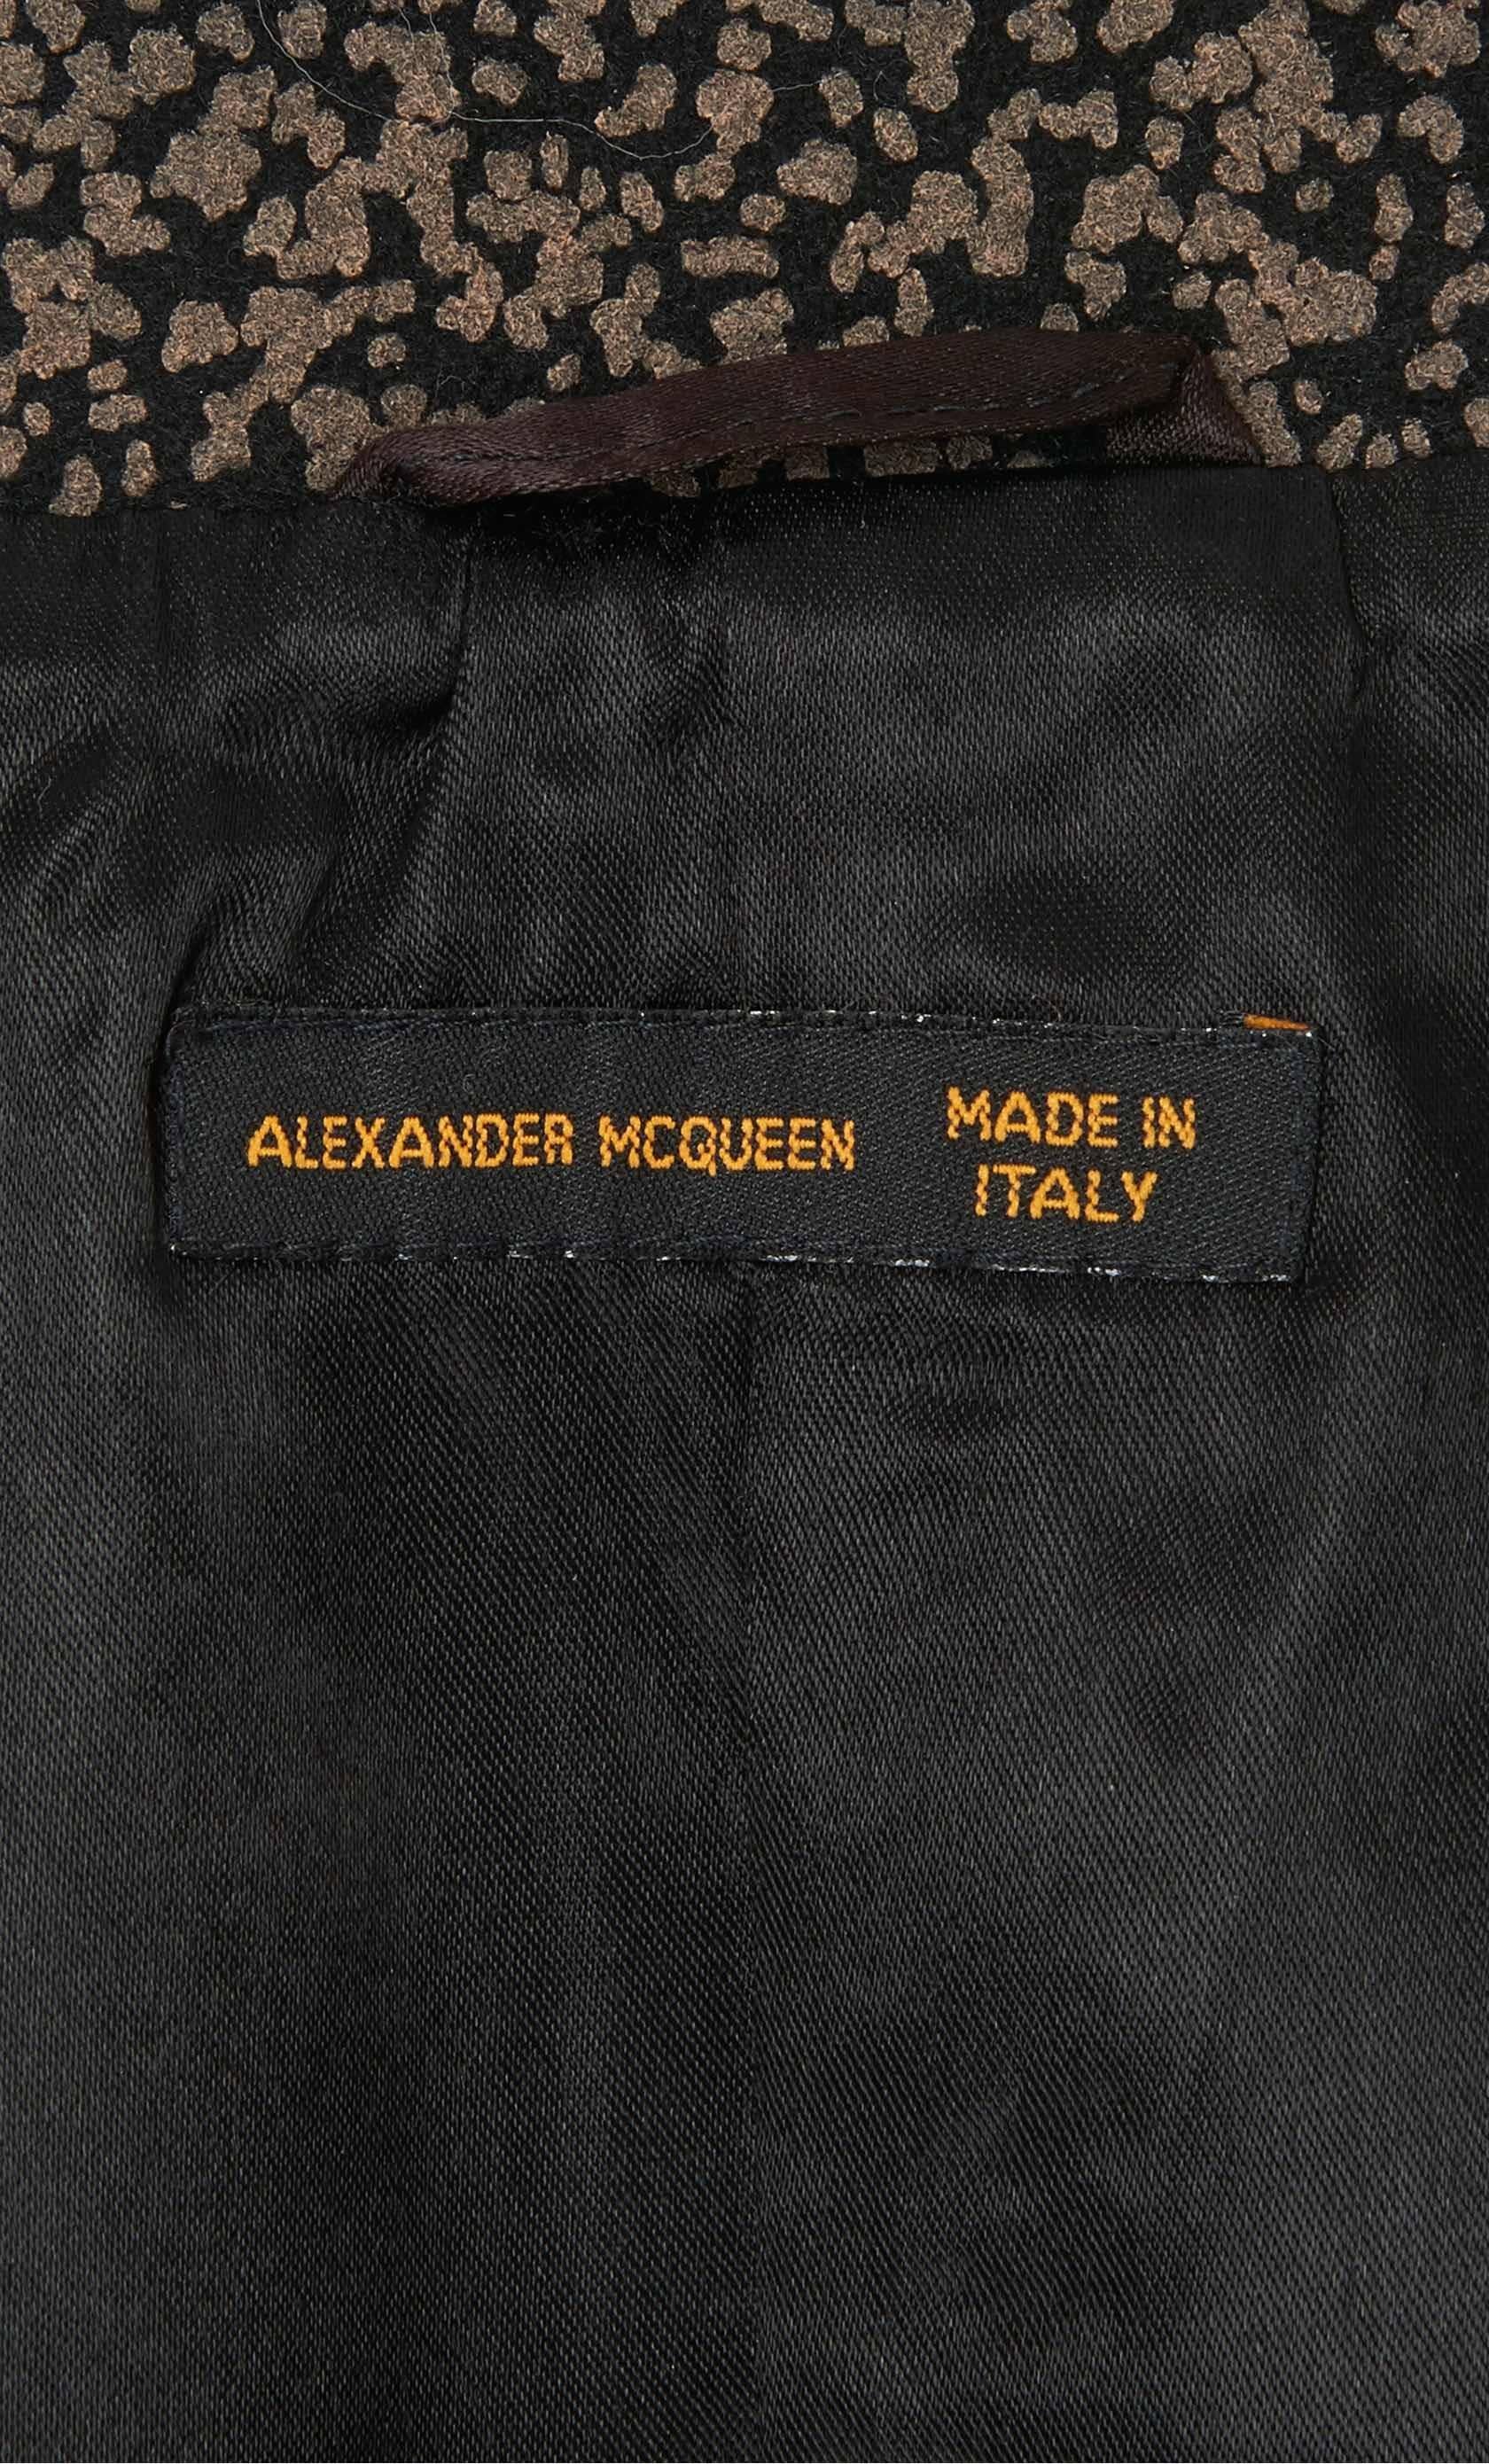 Women's Alexander McQueen black jacket, circa 1997 For Sale